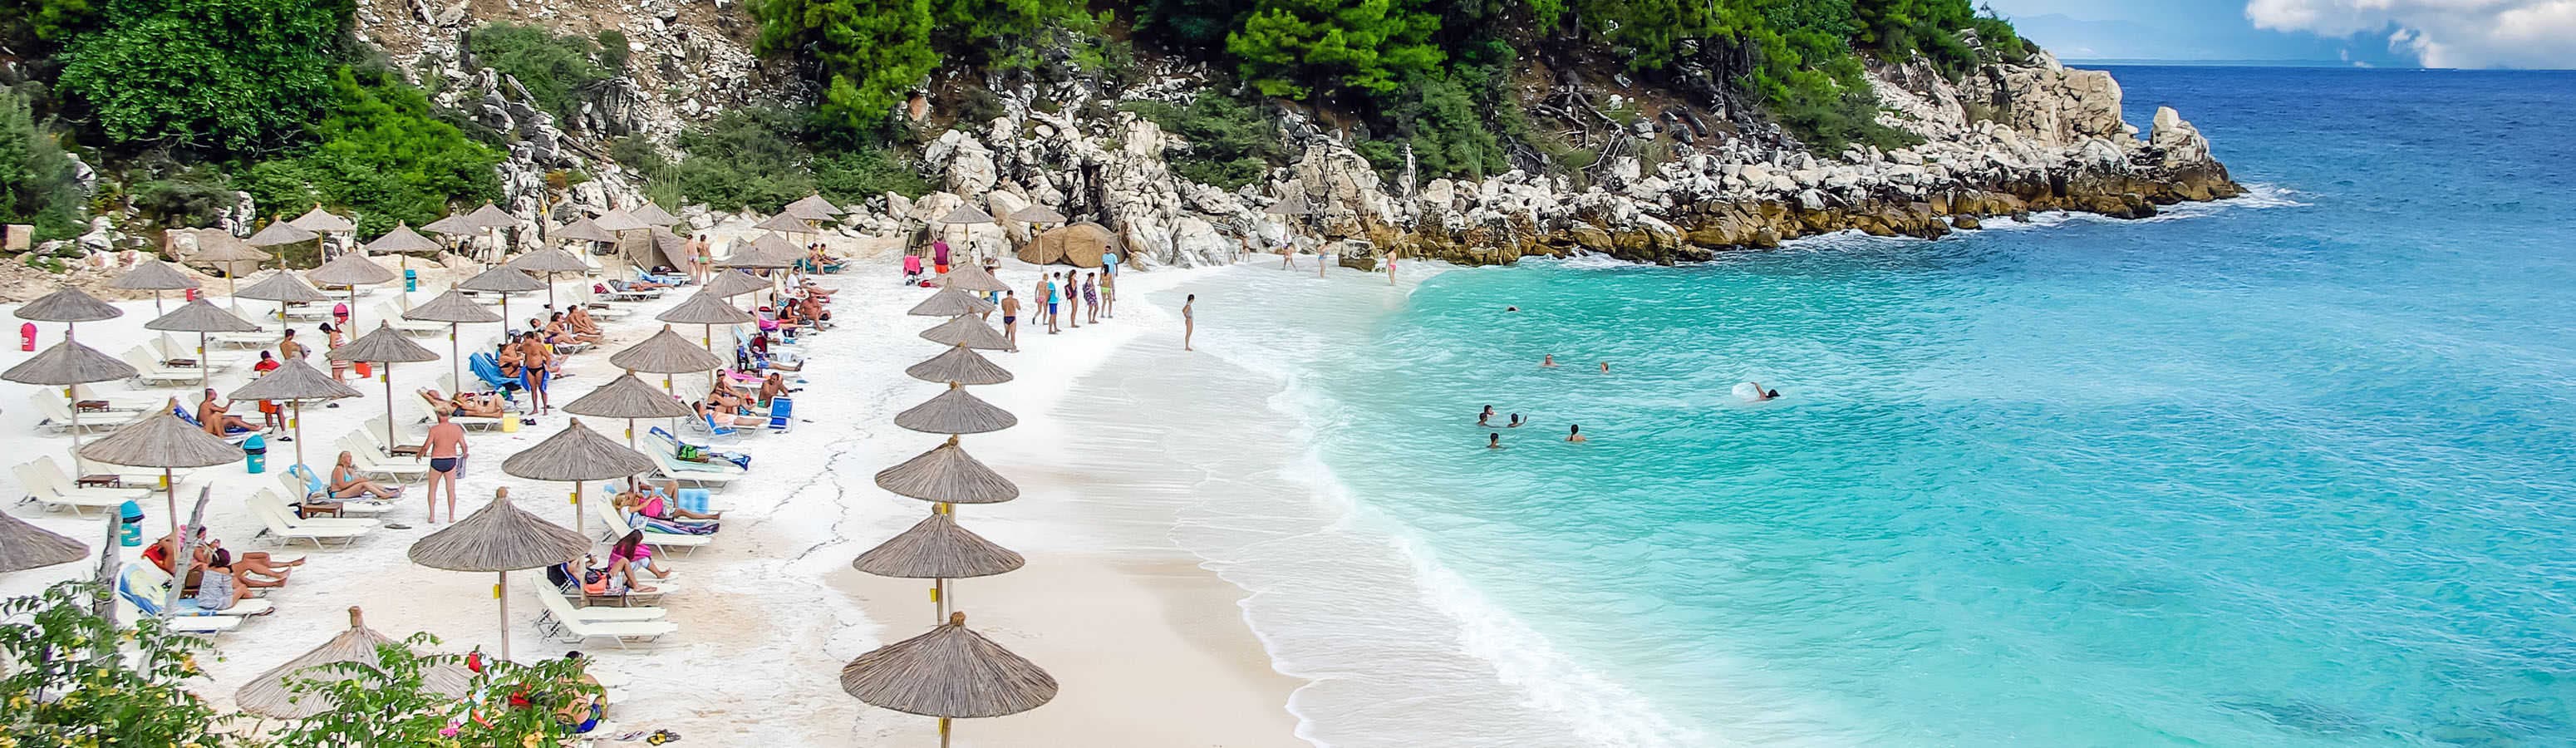 10 самых красивых пляжей в Греции